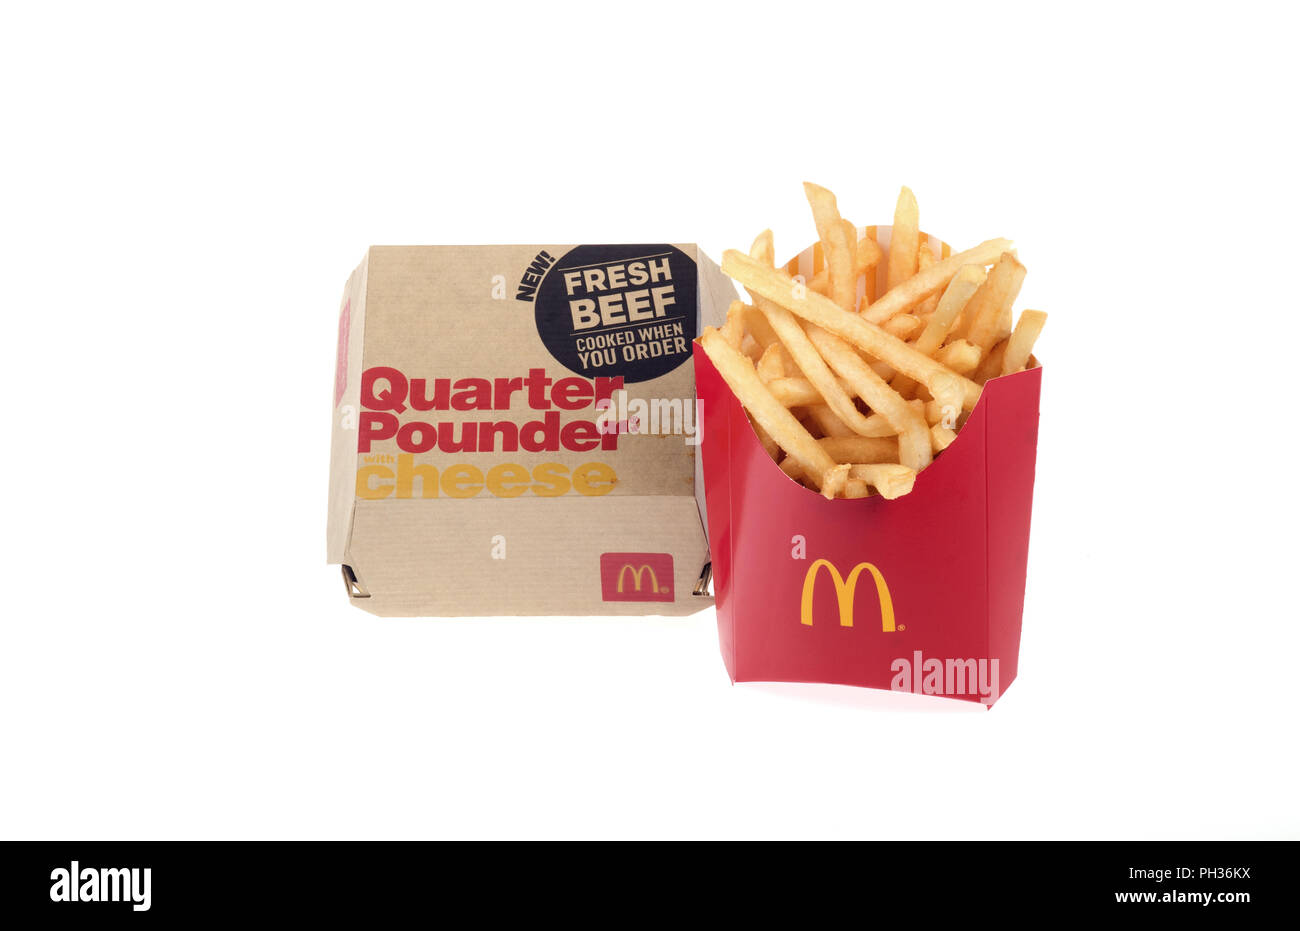 McDonald's le quart de livre de boeuf frais avec du fromage dans une boîte avec un médium frites. Il s'agit d'un burger préparé sur commande frais non congelé Banque D'Images